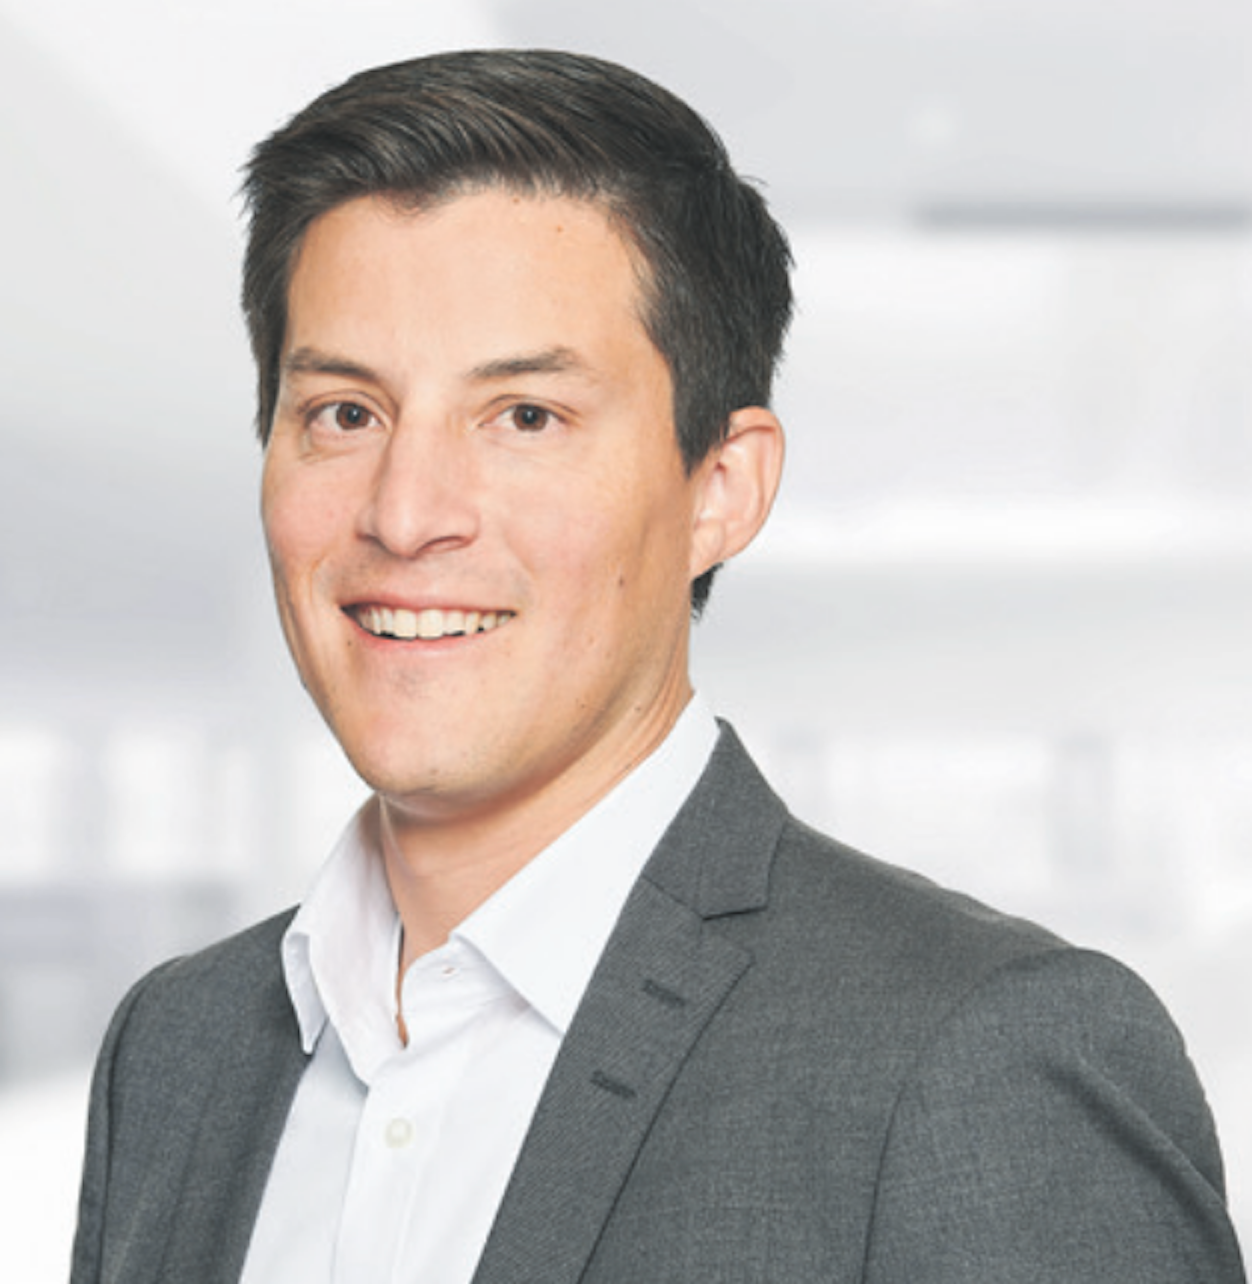 Carlos Pancho, Geschäftsbereichsleiter der Knauber Erdgas GmbH